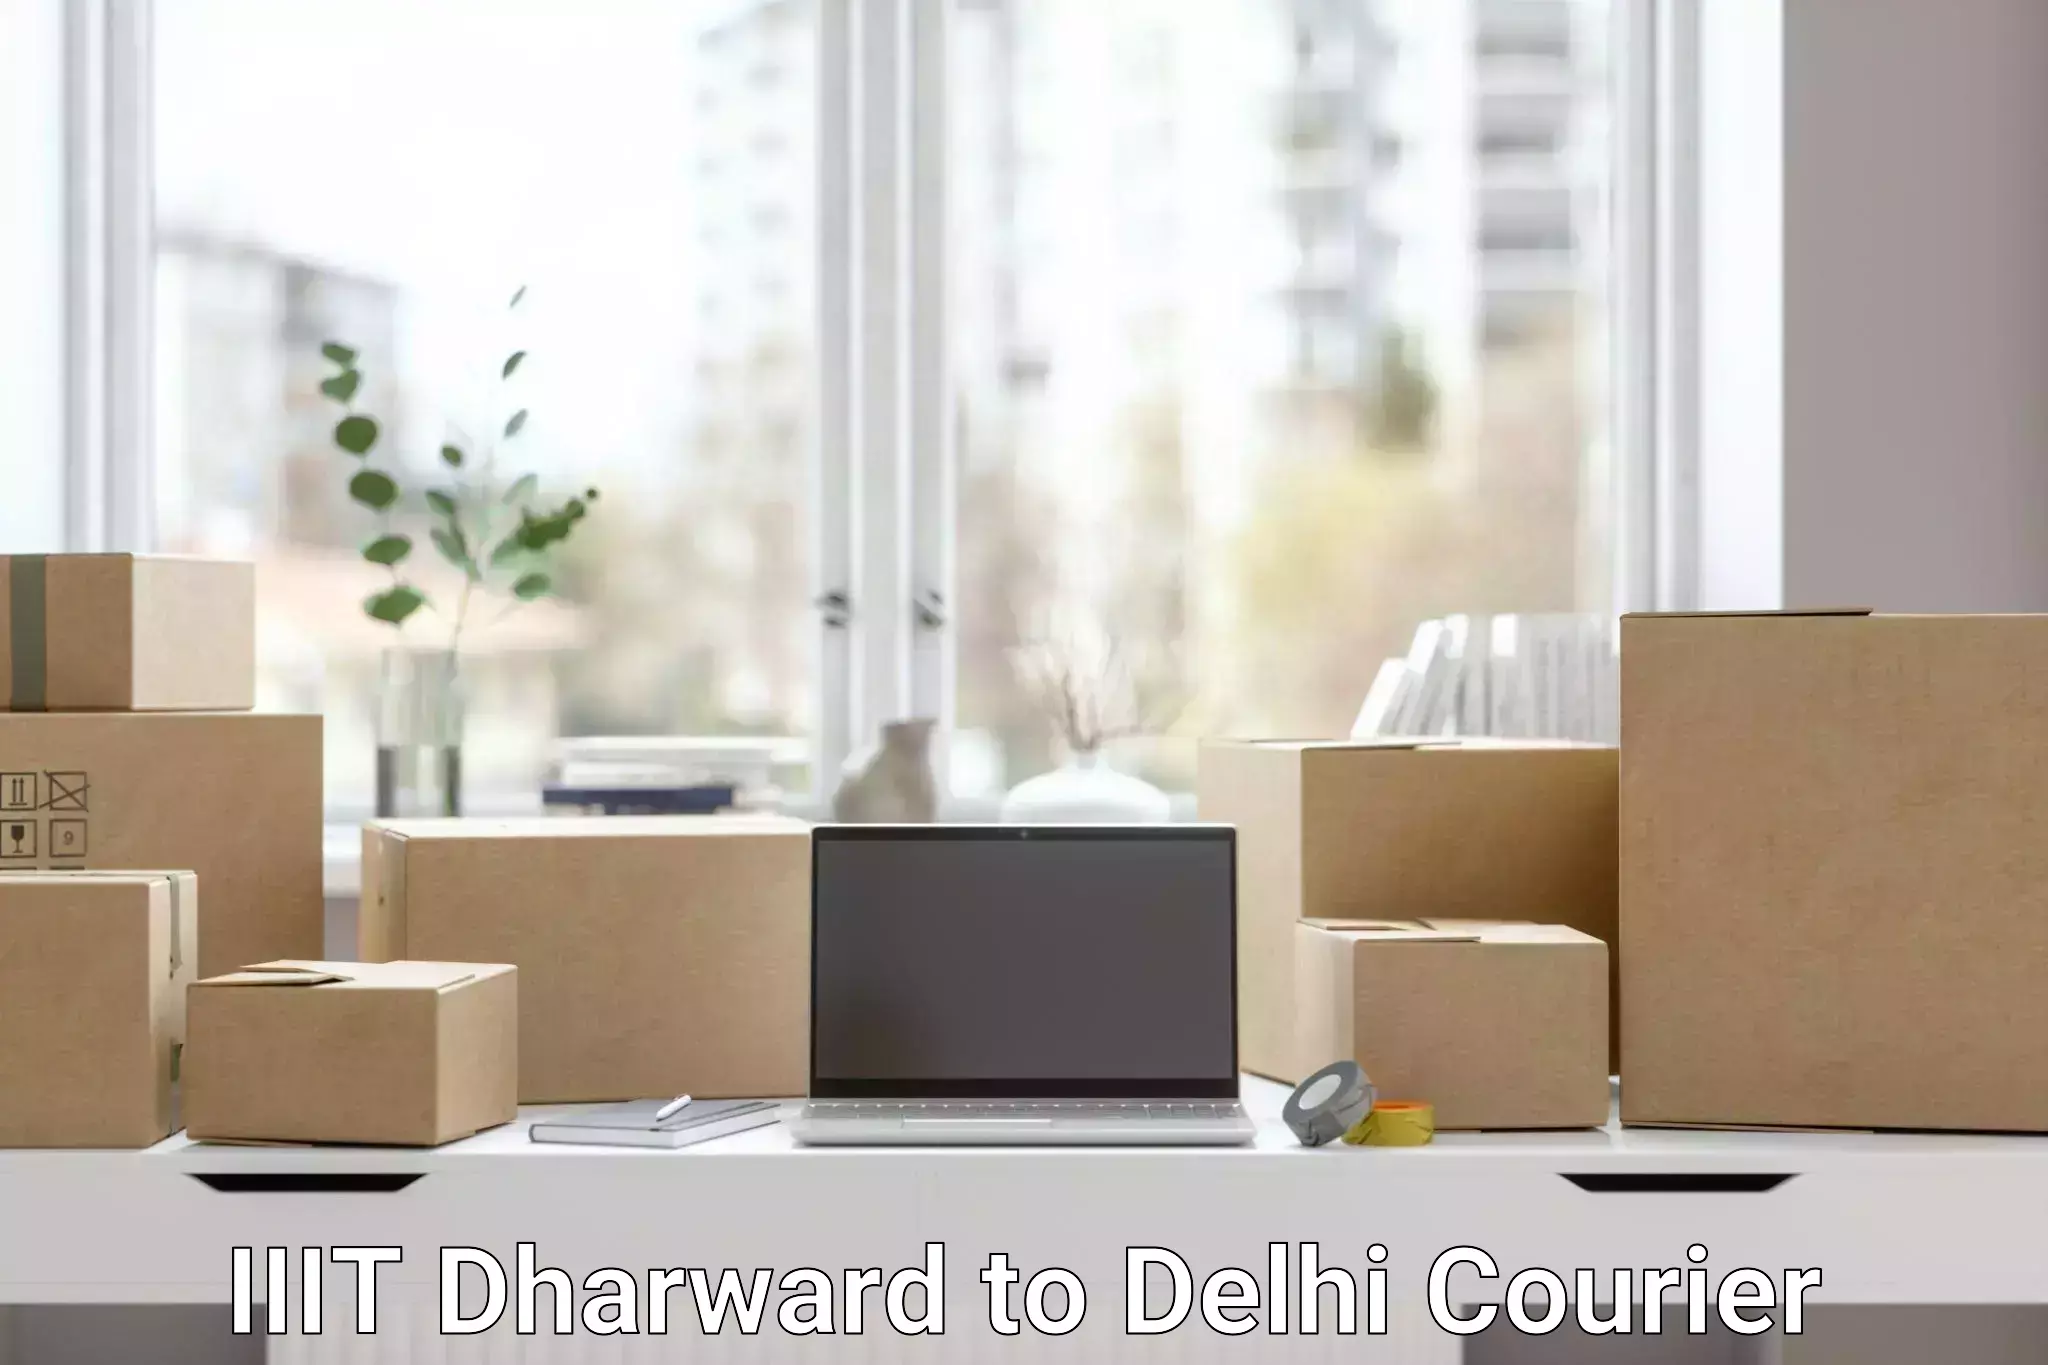 Diverse delivery methods IIIT Dharward to NIT Delhi